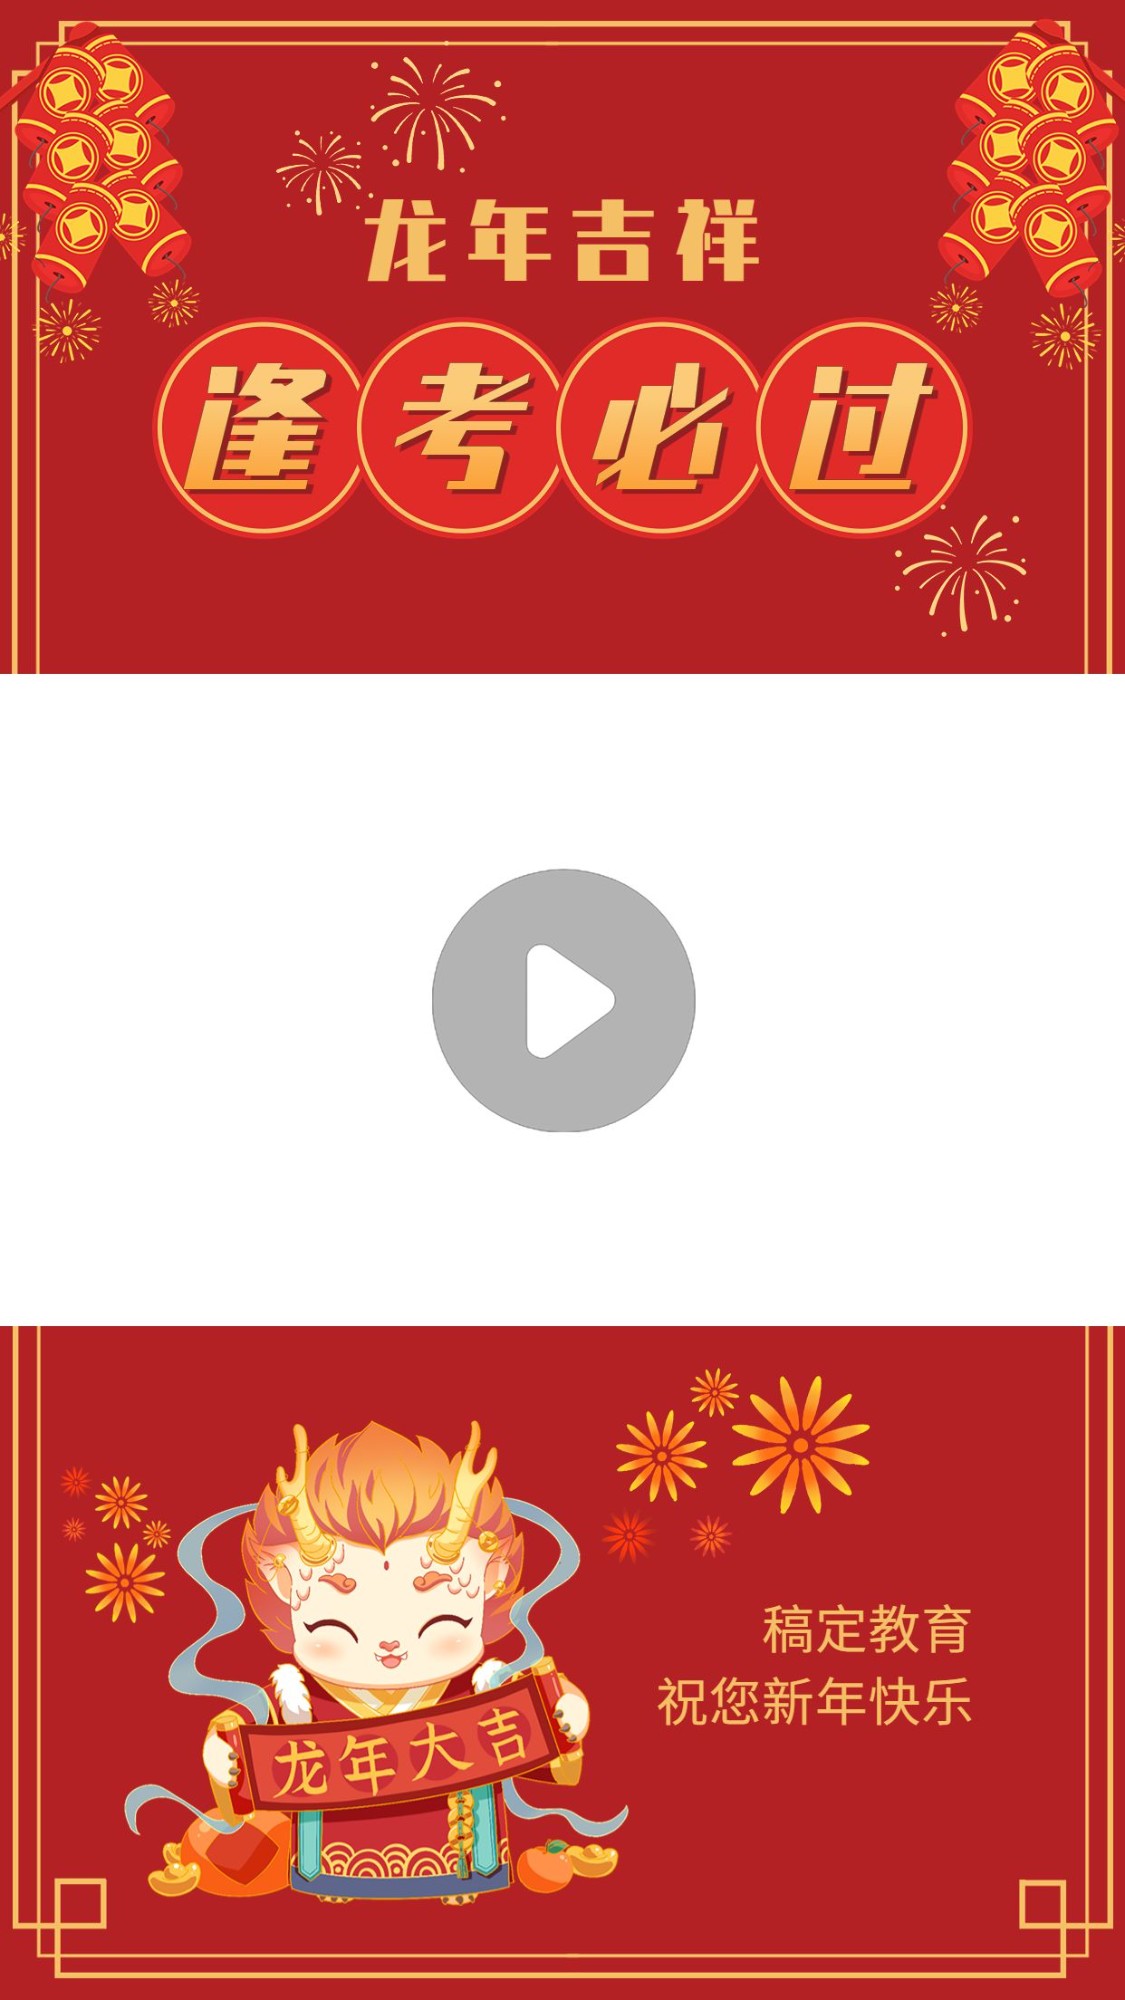 春节祝福教育行业春节拜年祝福卡通插画视频边框